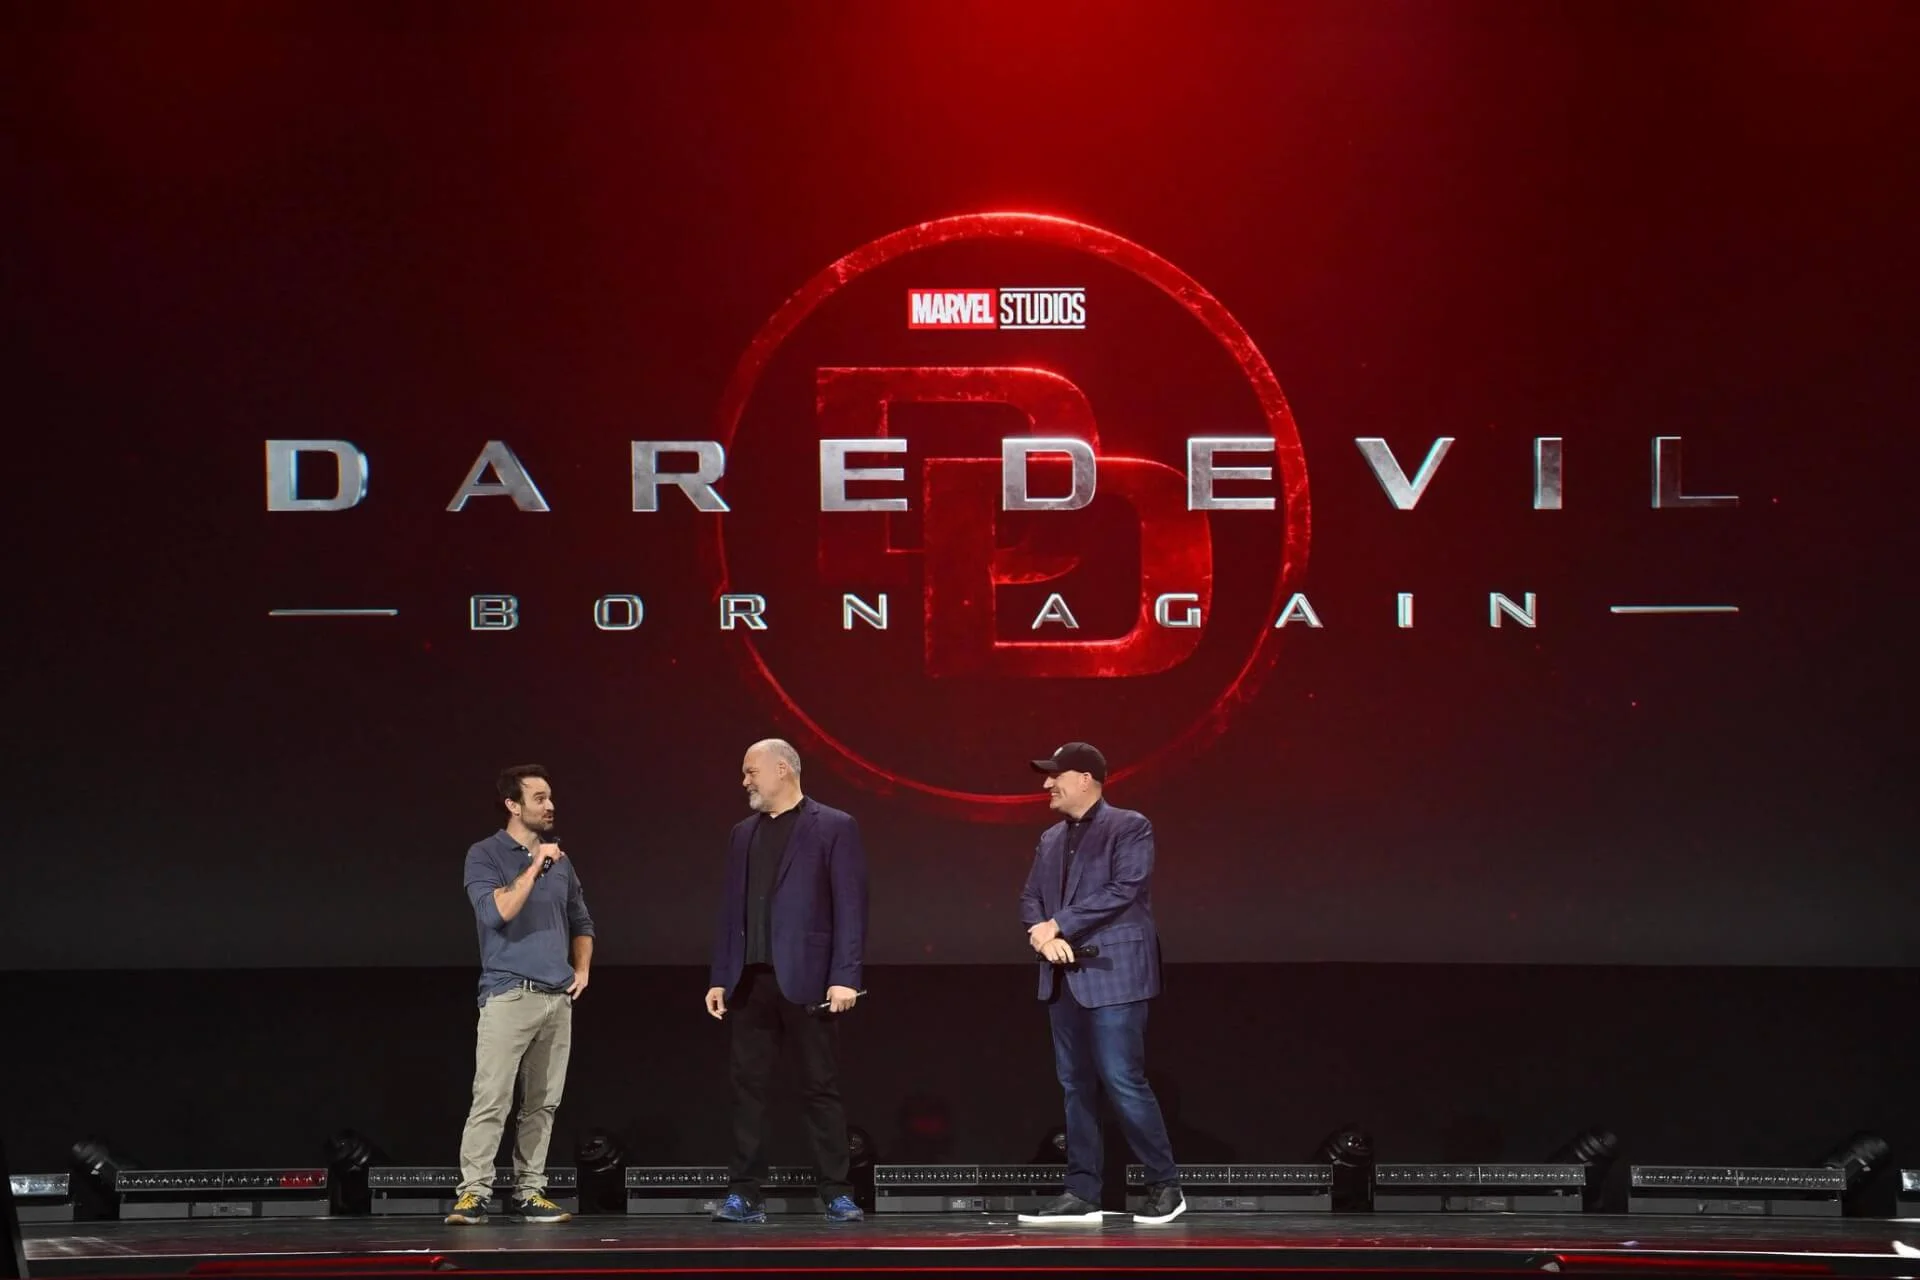 Daredevil: Born Again